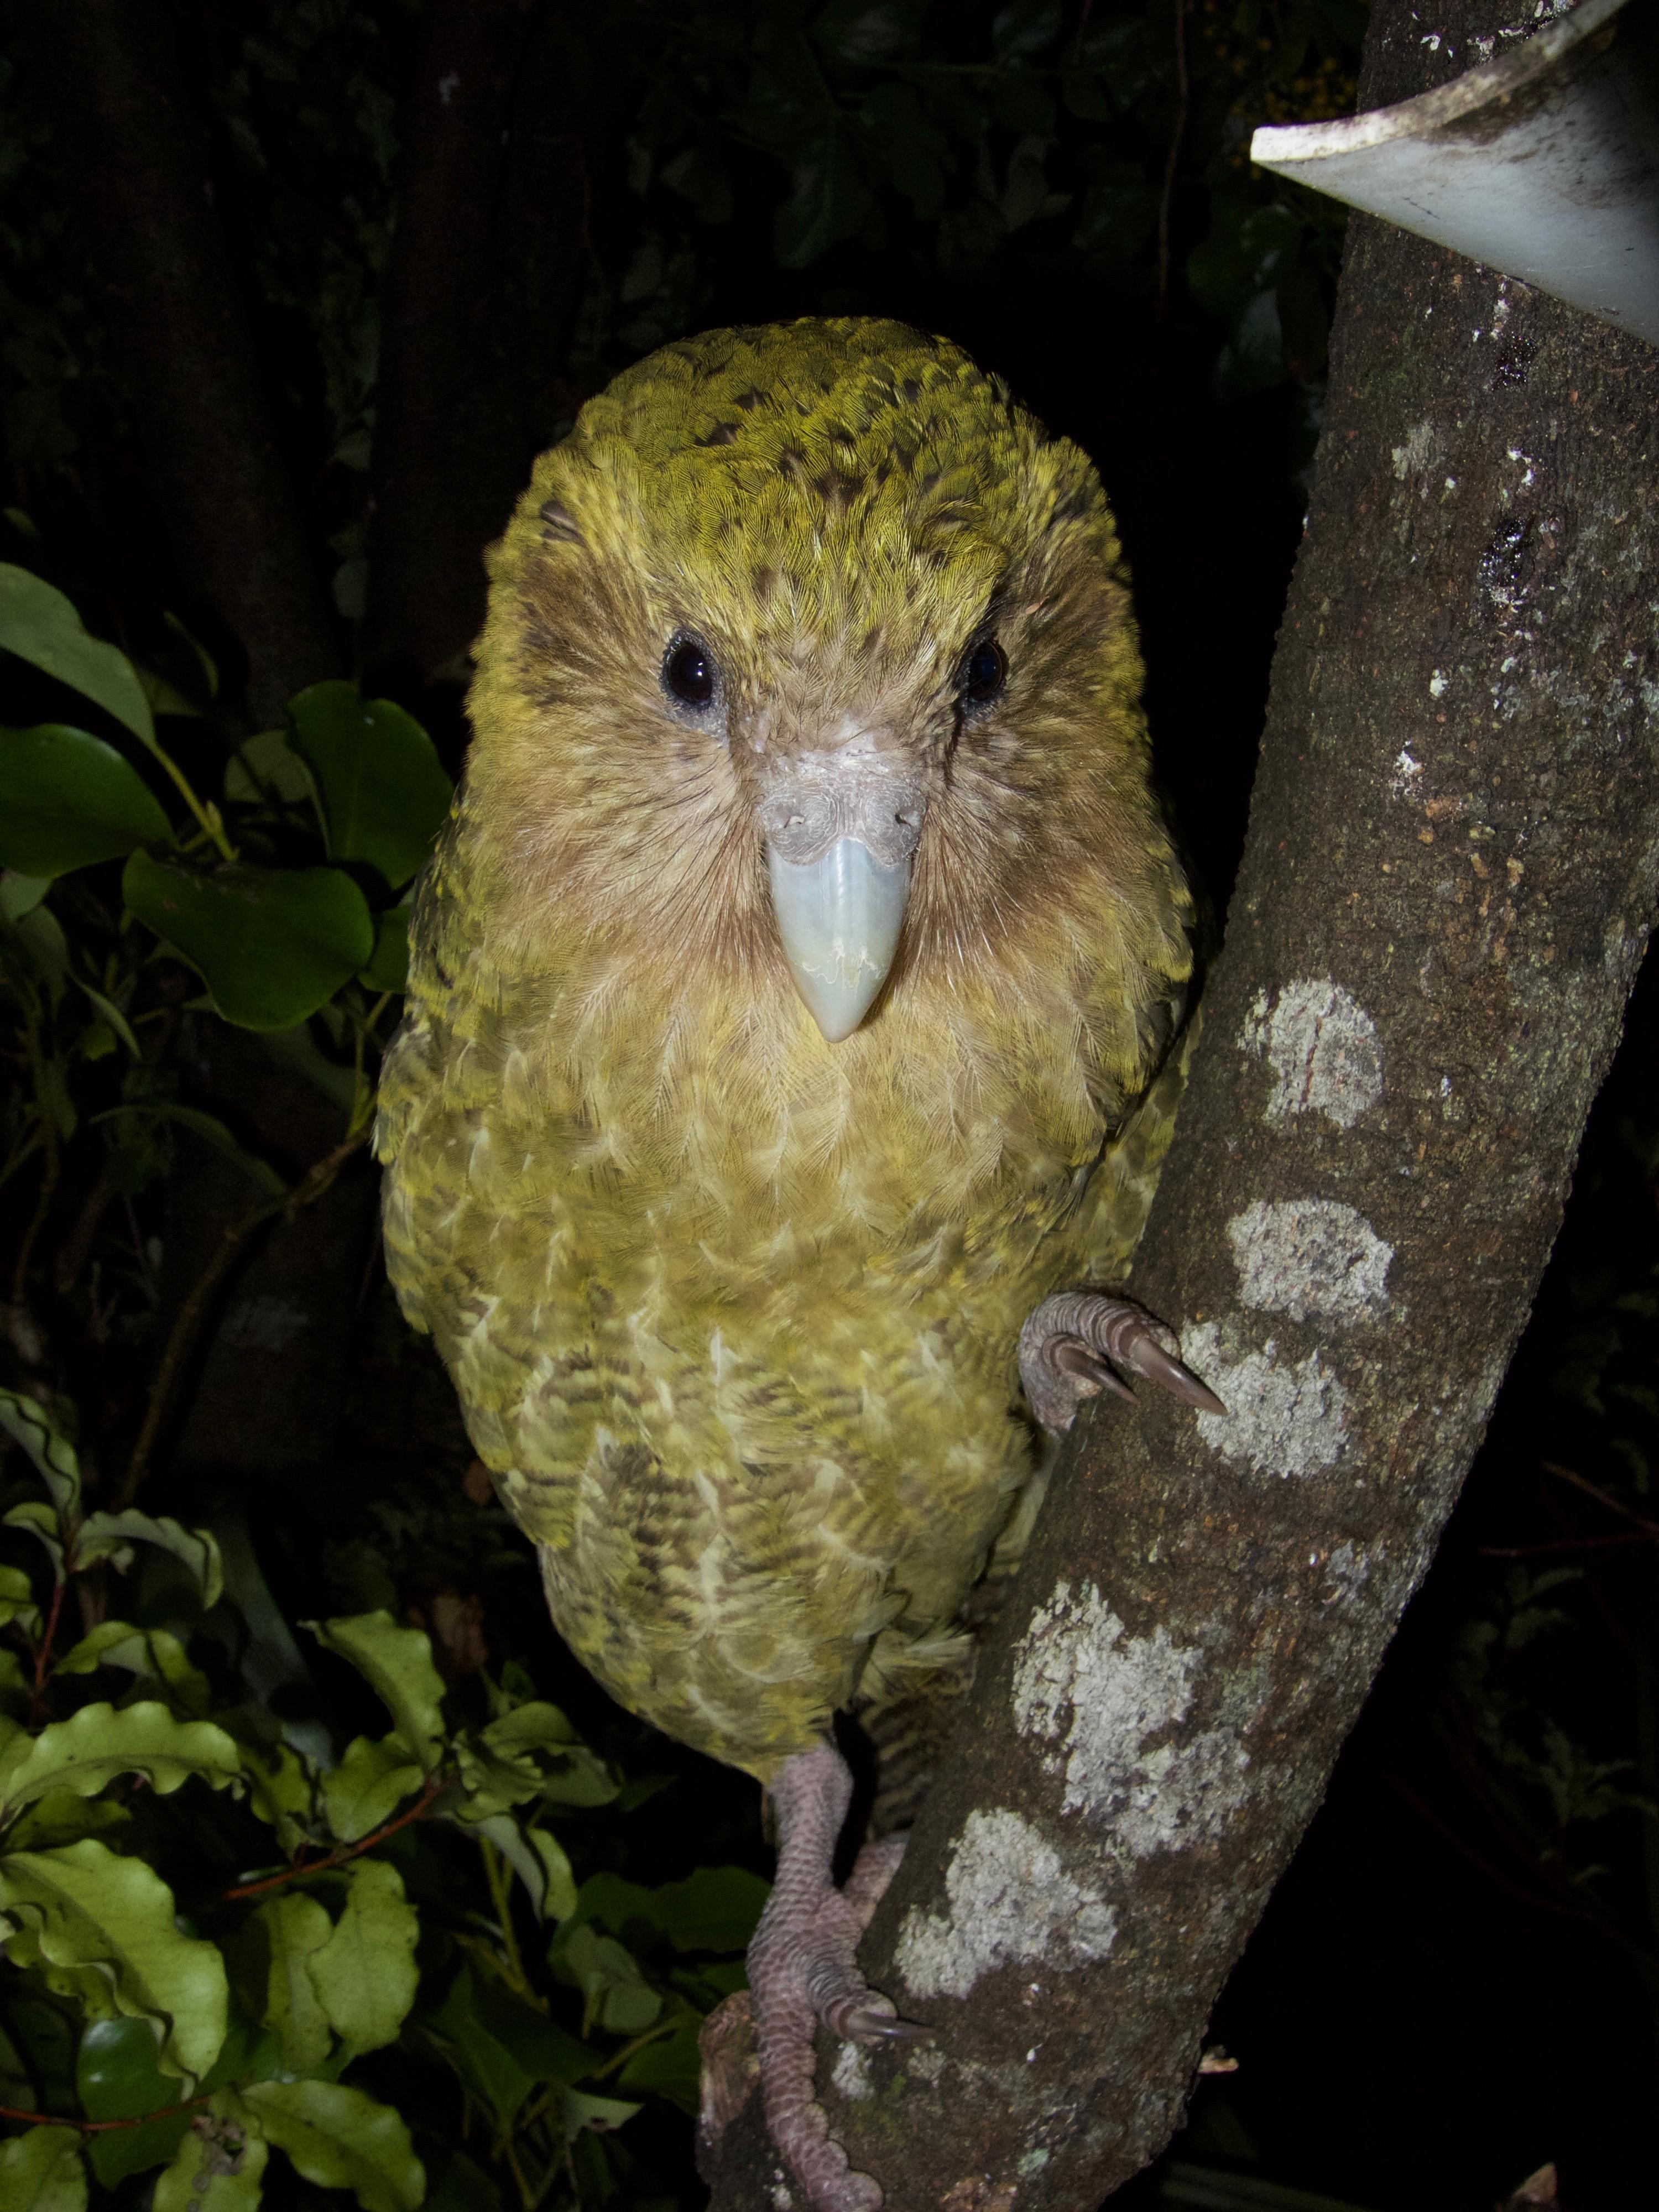 Le kakapo grimpe très bien aux arbres grâce à ses pattes griffues; il s'aide de son bec qui lui sert de troisième patte. [Department of Conservation, New Zealand - Andrew Digby]